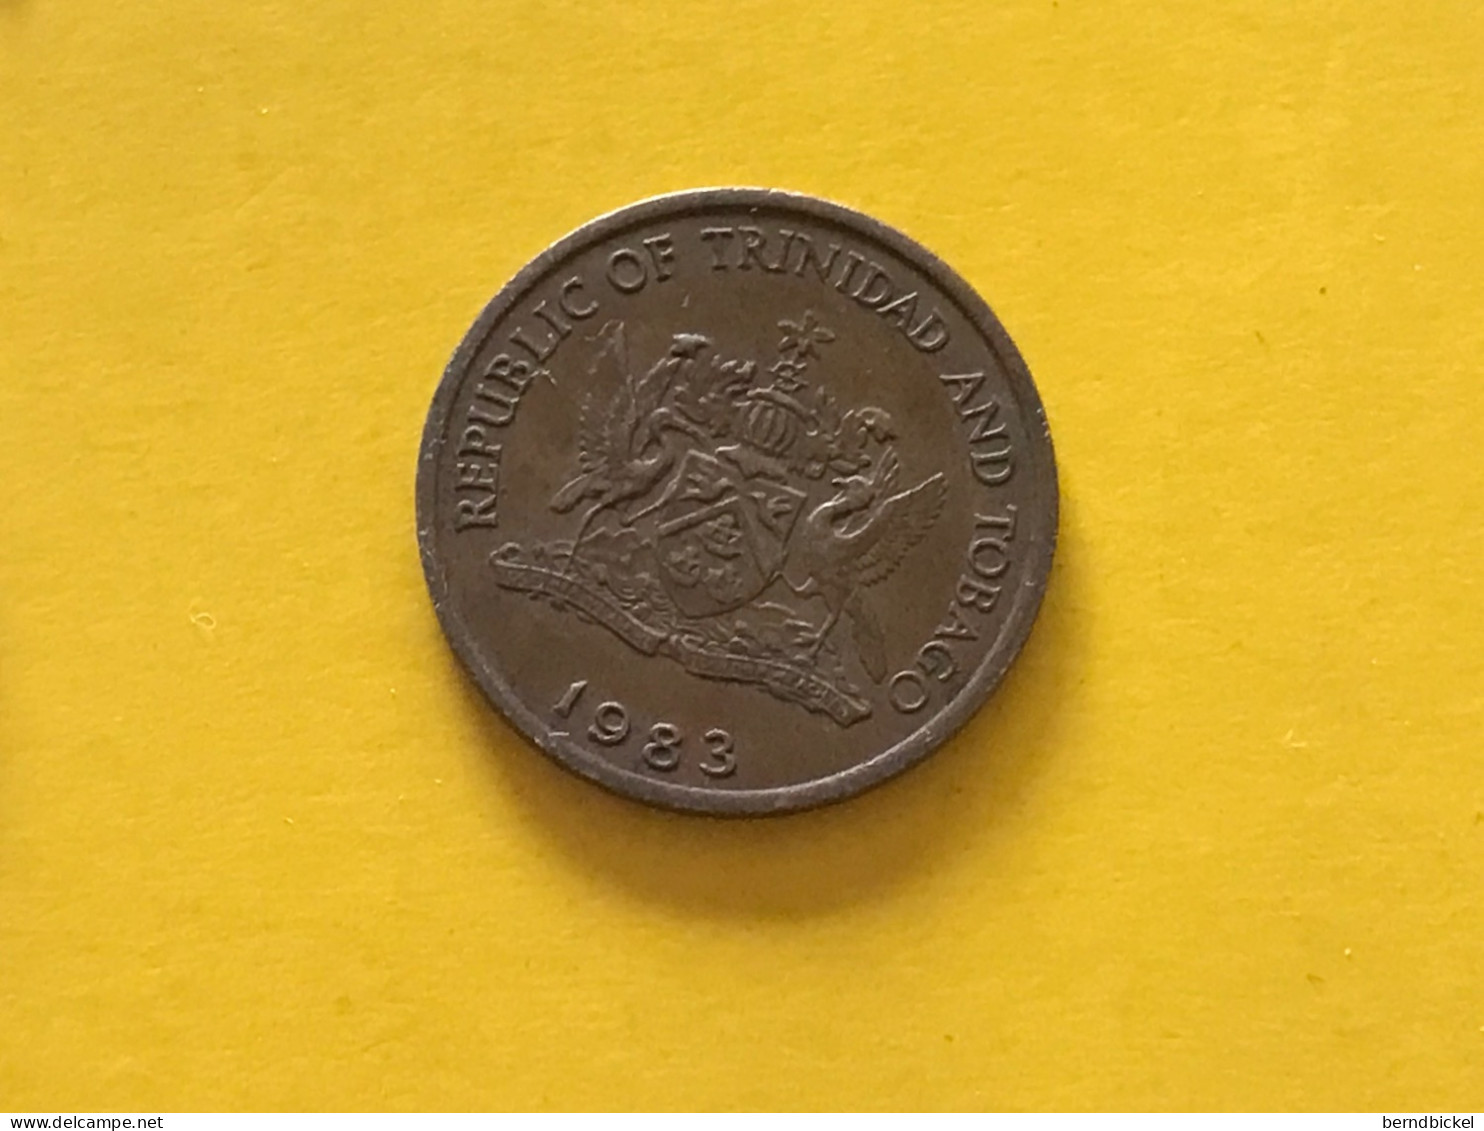 Münze Münzen Umlaufmünze Trinidad & Tobago 1 Cent 1983 - Trinidad Y Tobago